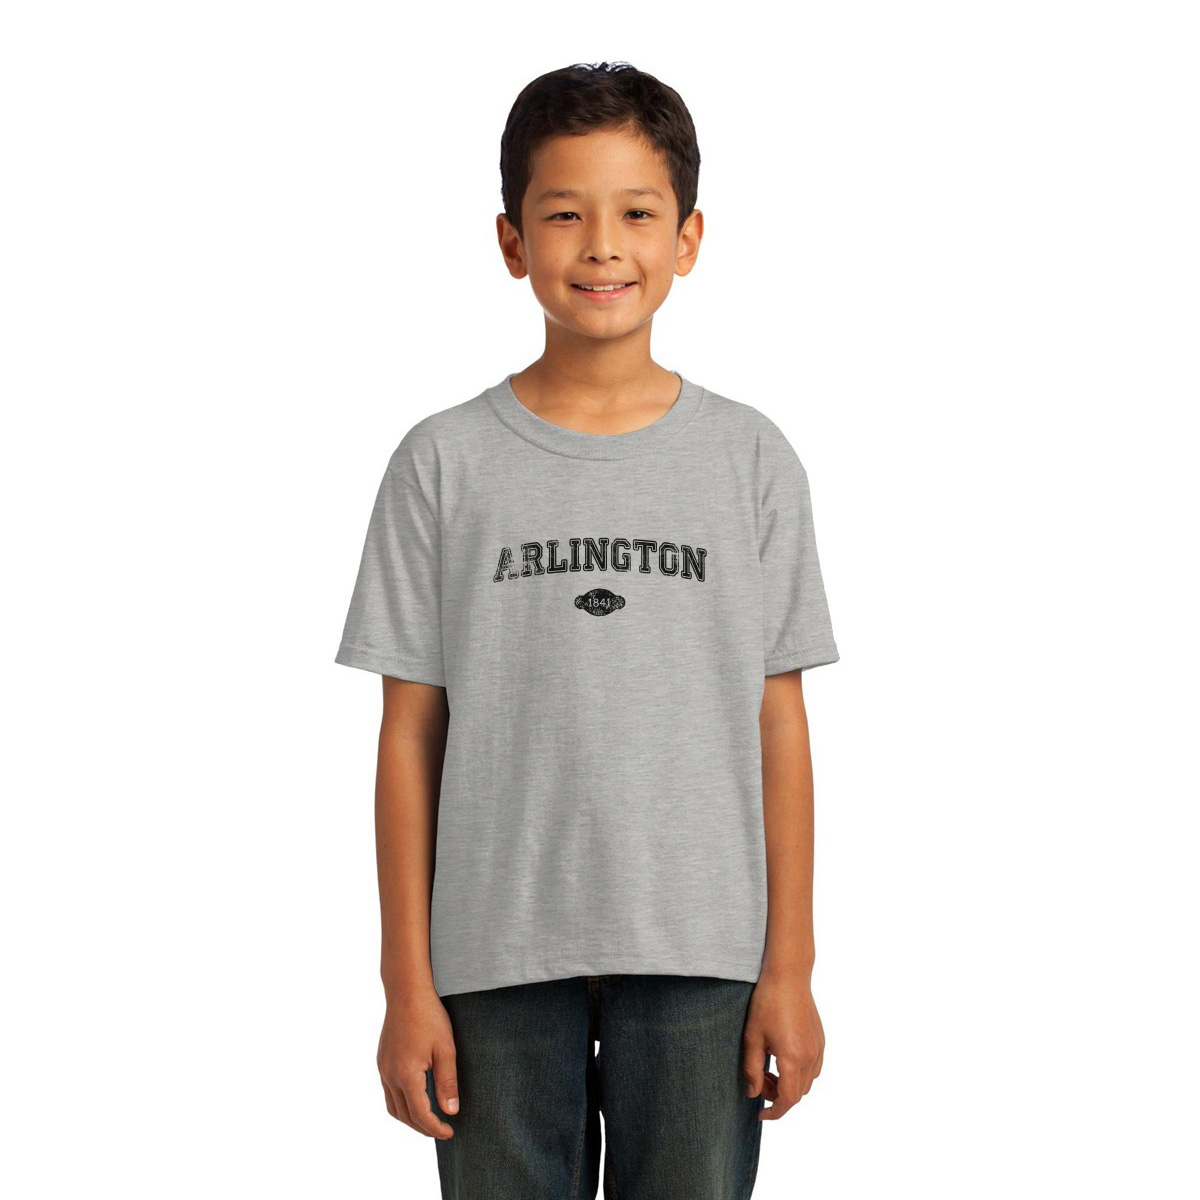 Arlington 1841 Represent Toddler T-shirt | Gray